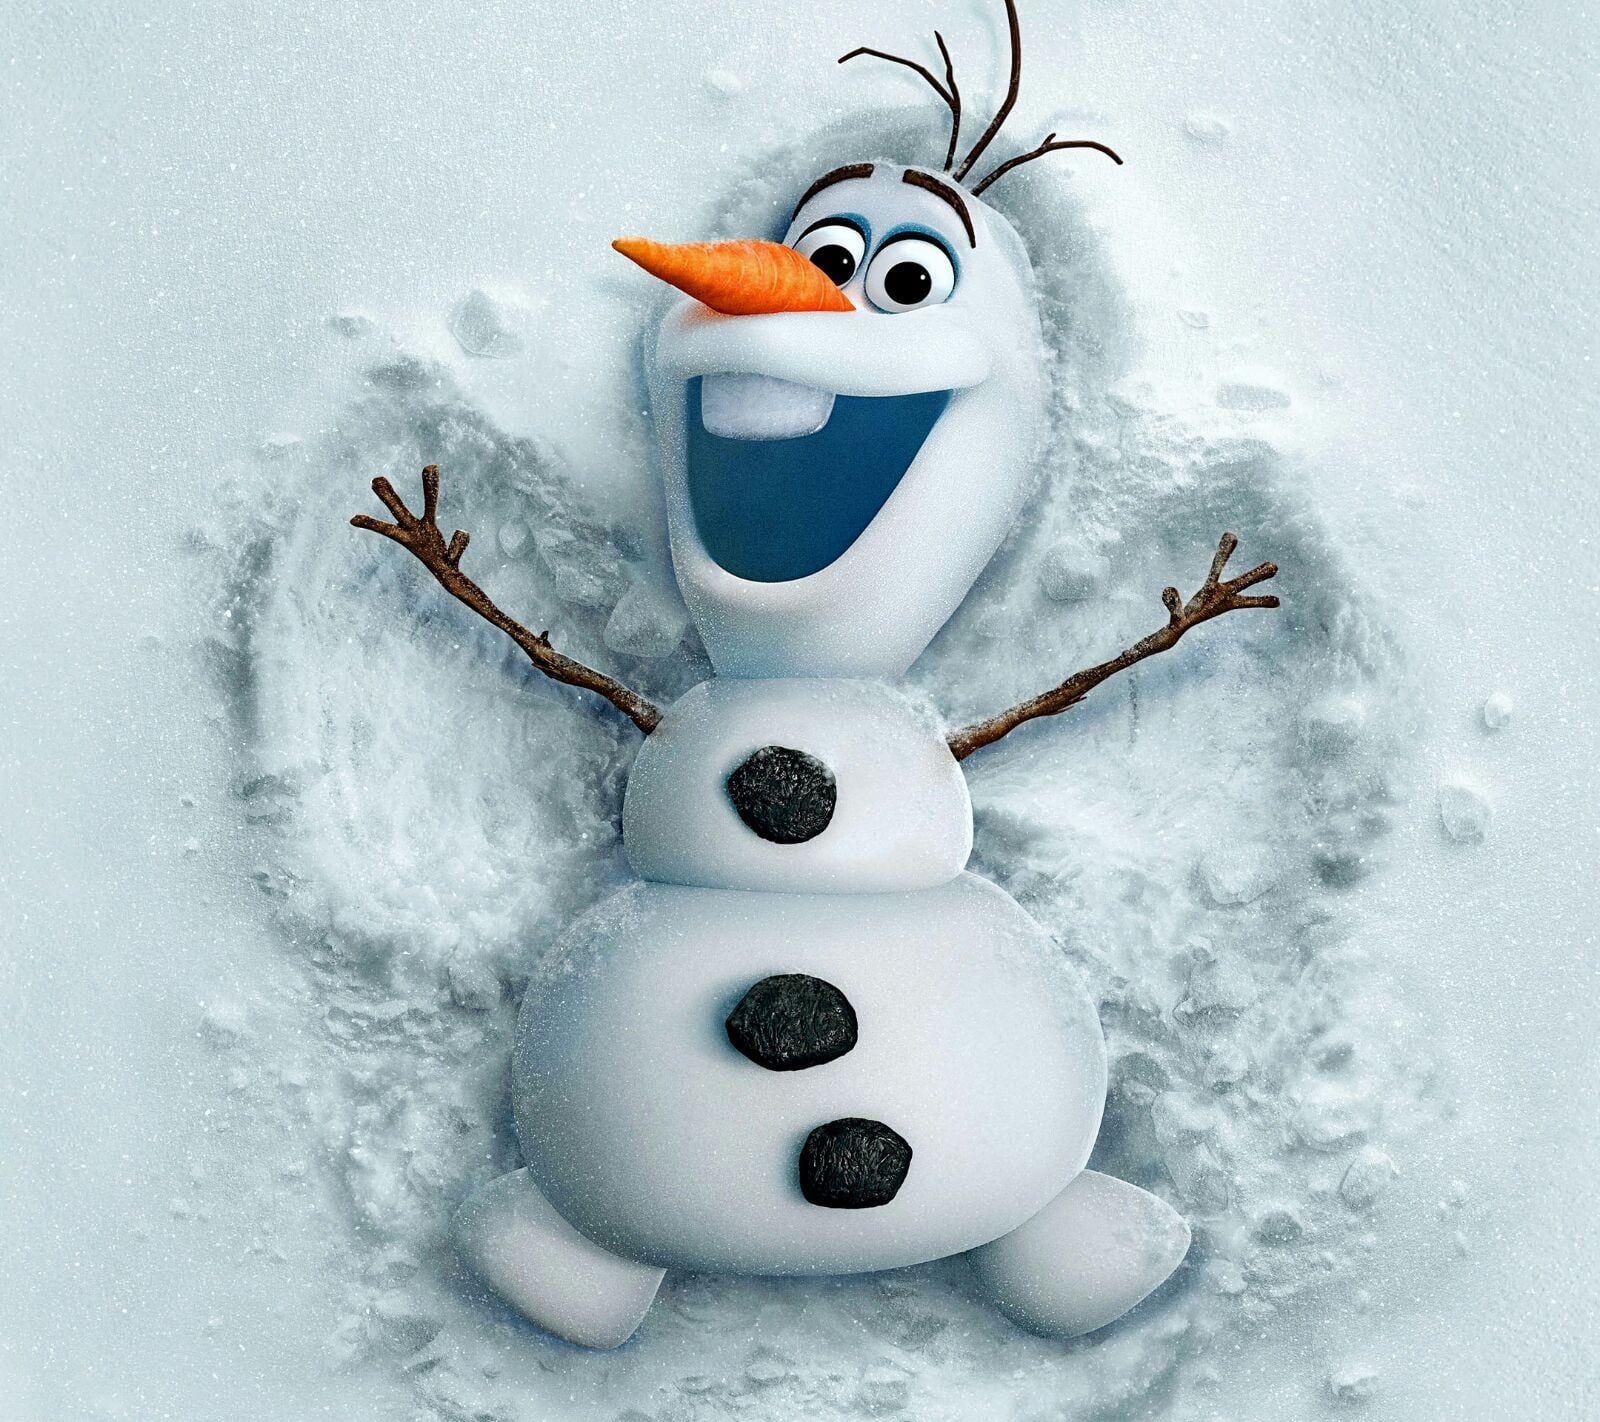 Disney Frozen Olaf digital wallpaper, Olaf, snowman, Frozen (movie) HD wallpaper